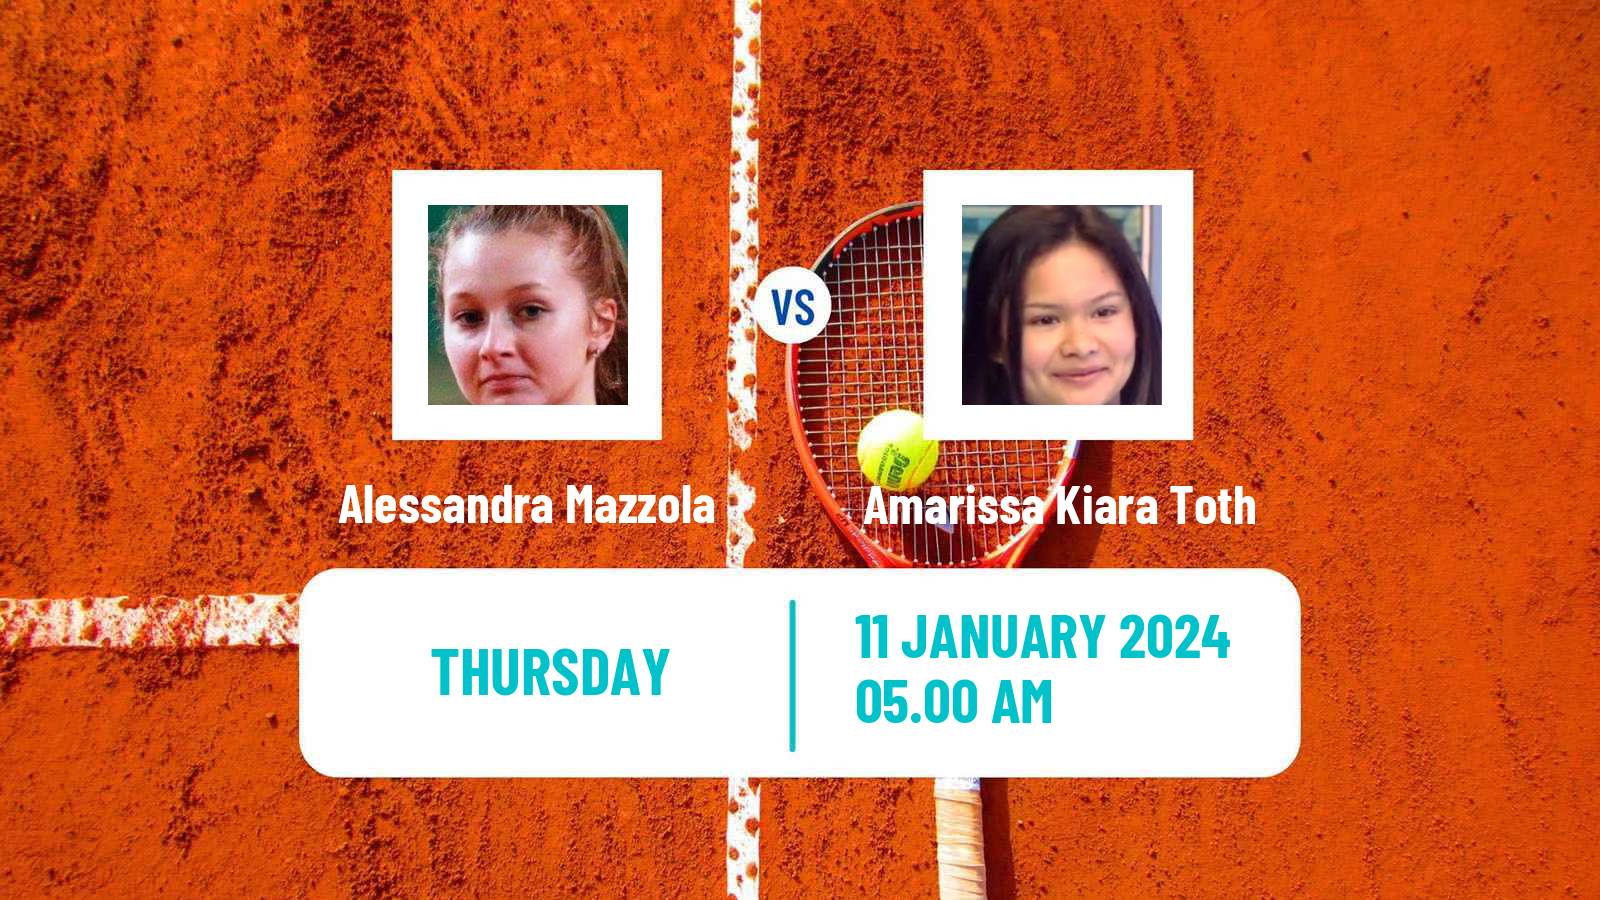 Tennis ITF W35 Antalya Women Alessandra Mazzola - Amarissa Kiara Toth